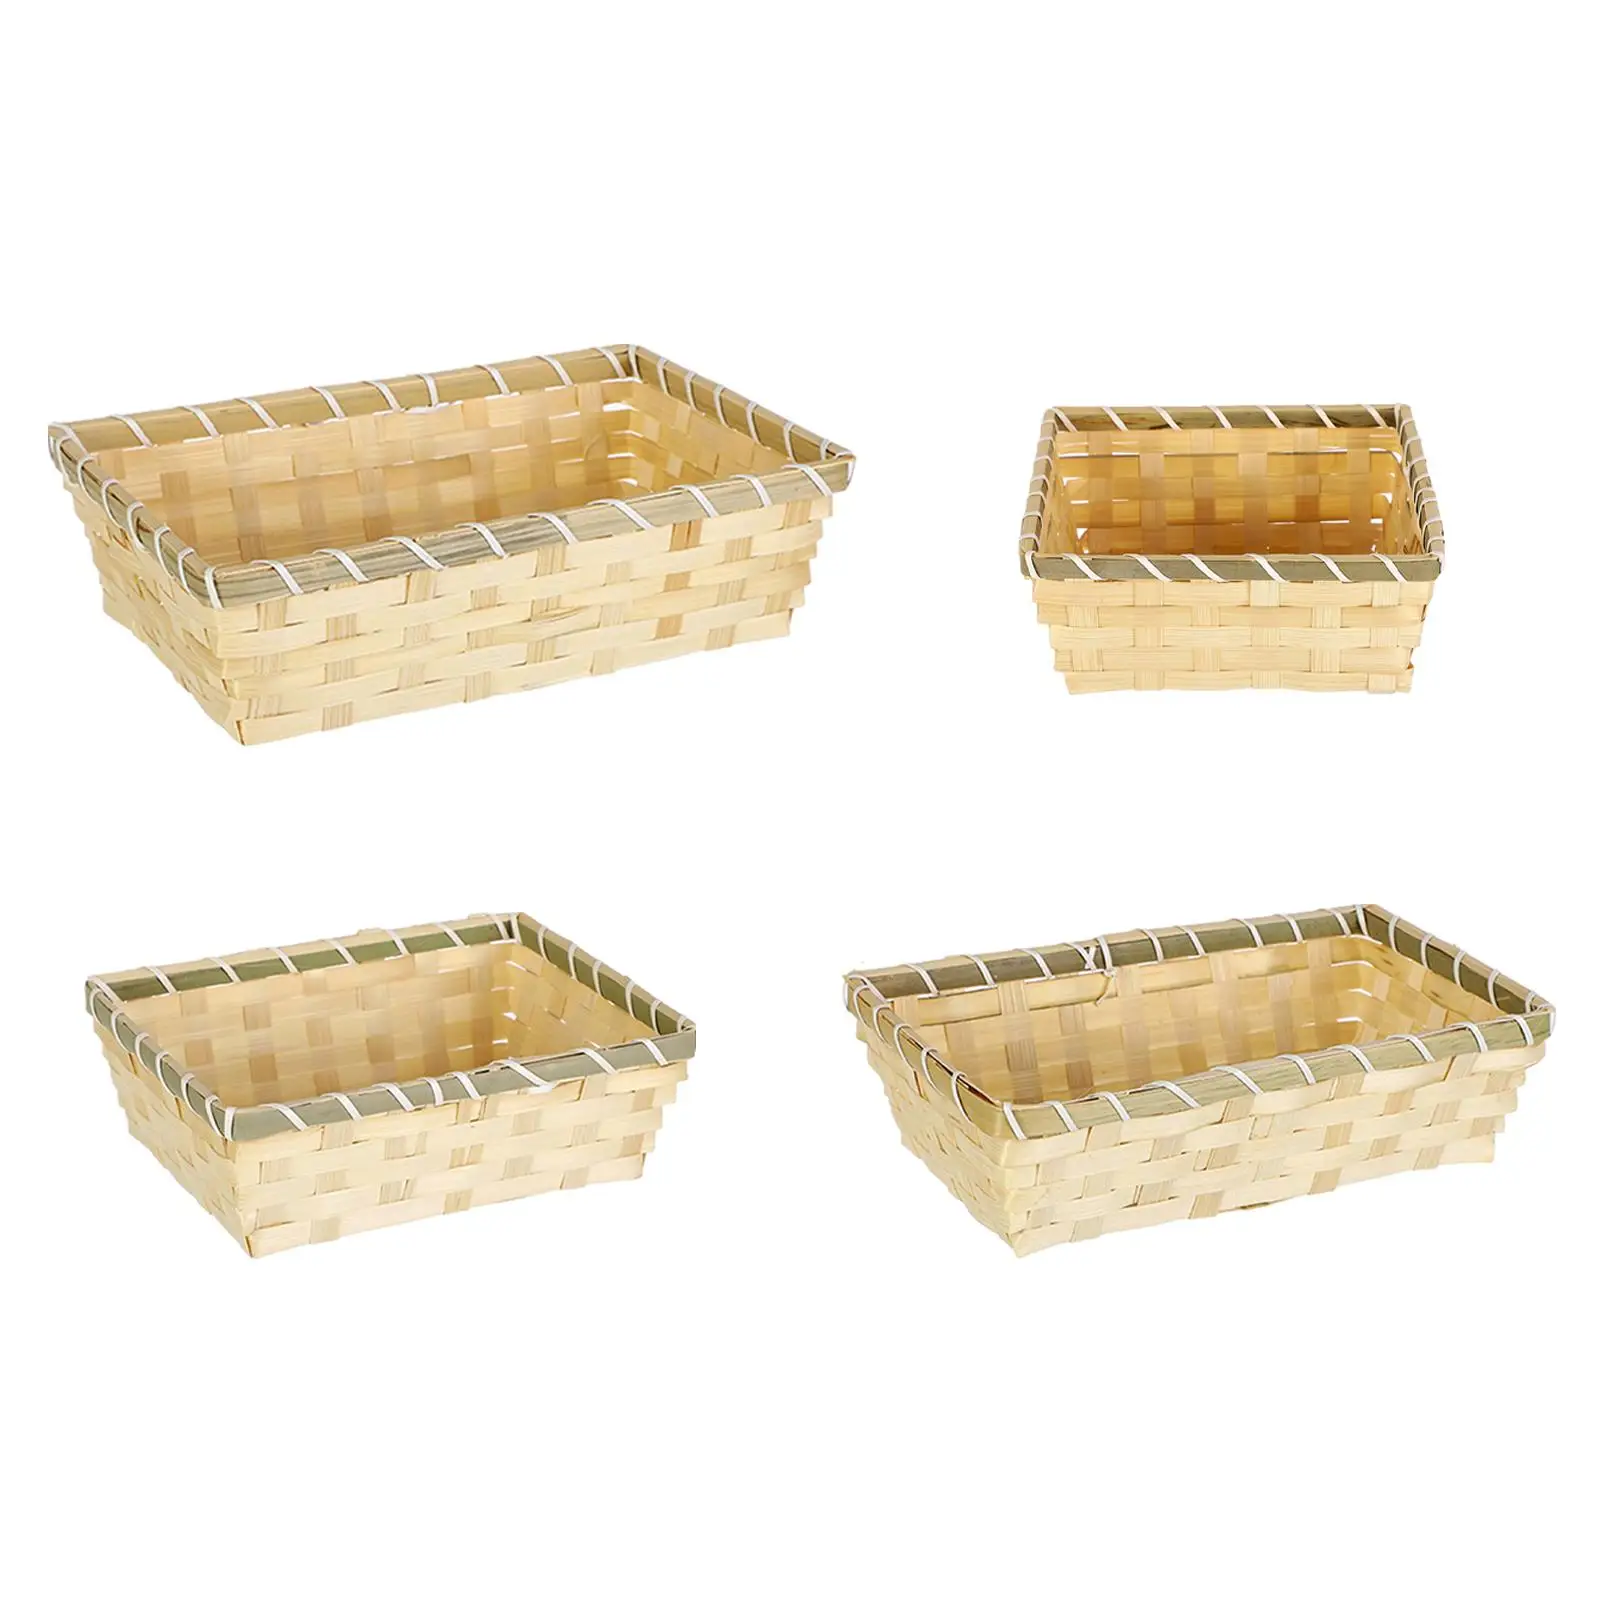 Storage Basket Multipurpose Woven Sundries Bread Basket Food Serving Basket for Office Closets Pantry Shelves Kitchen Bathroom